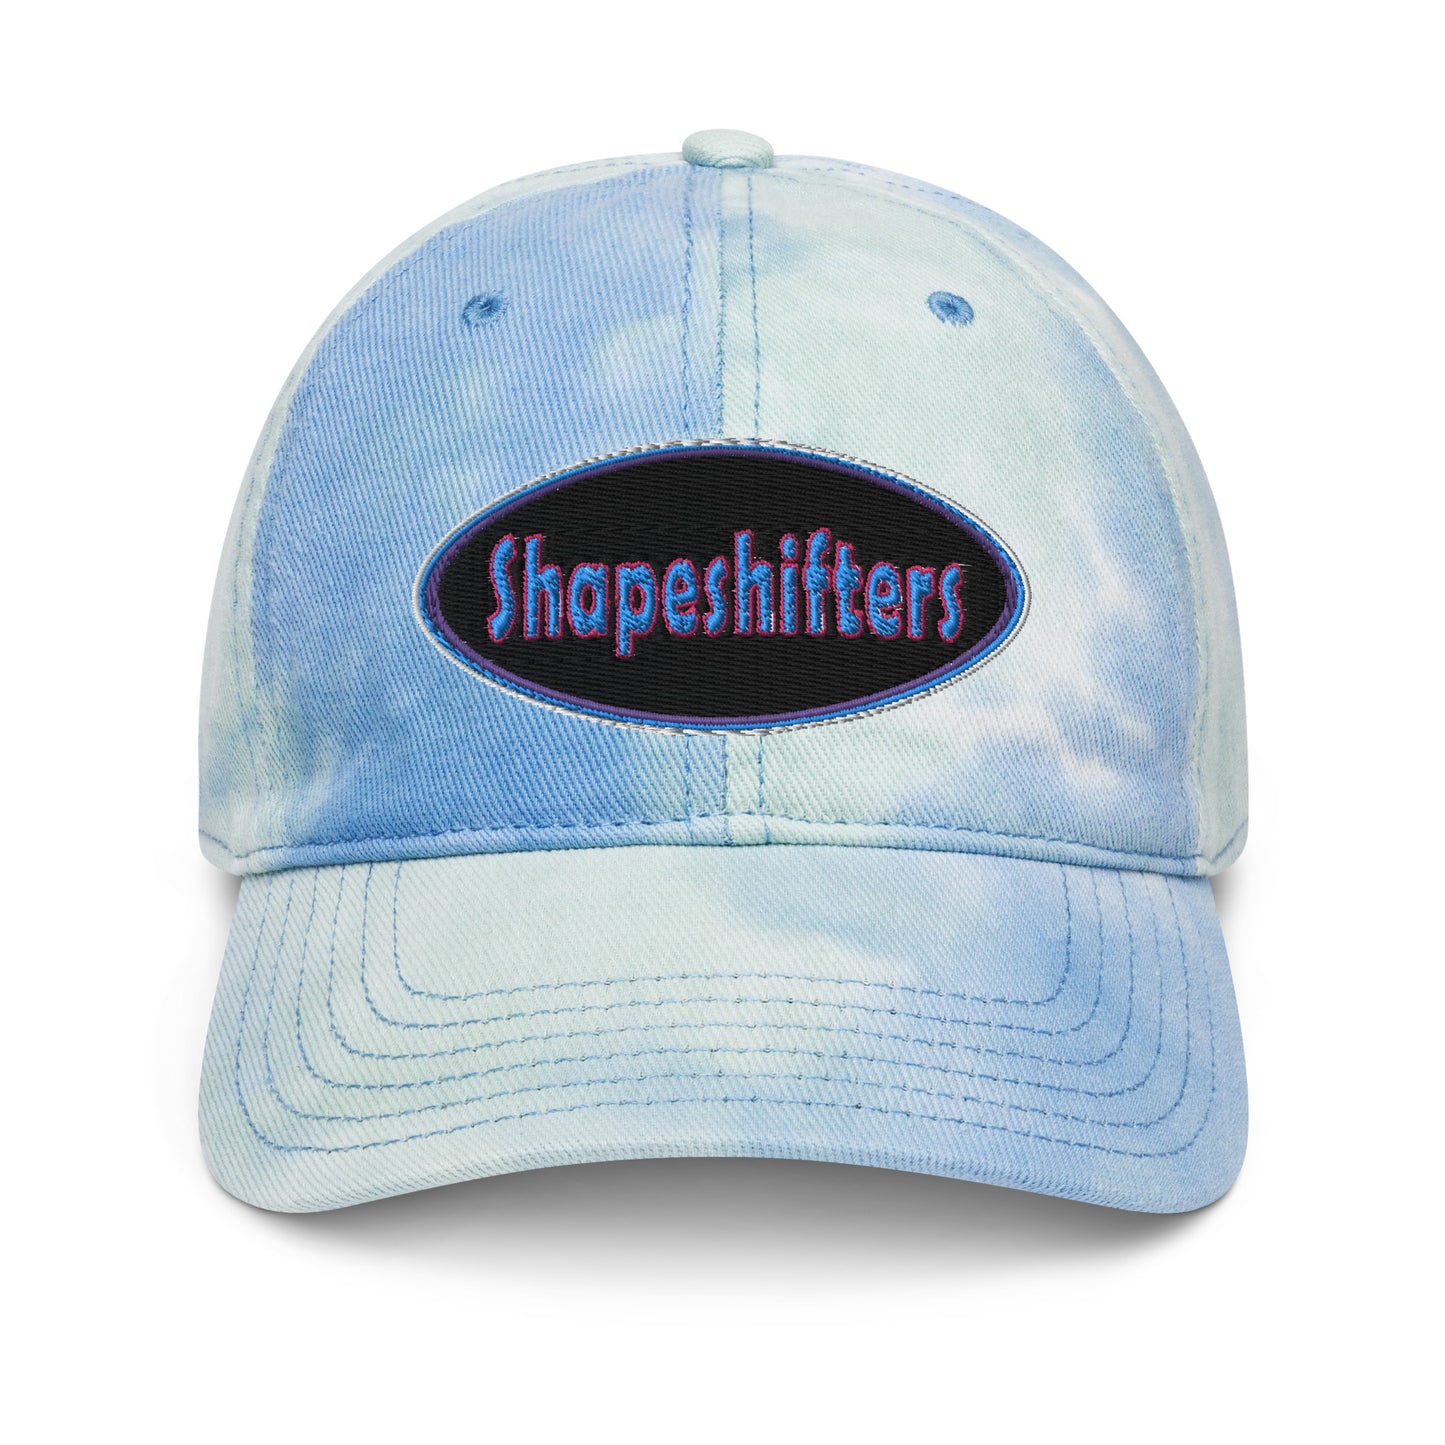 Shapeshifters Tie dye hat